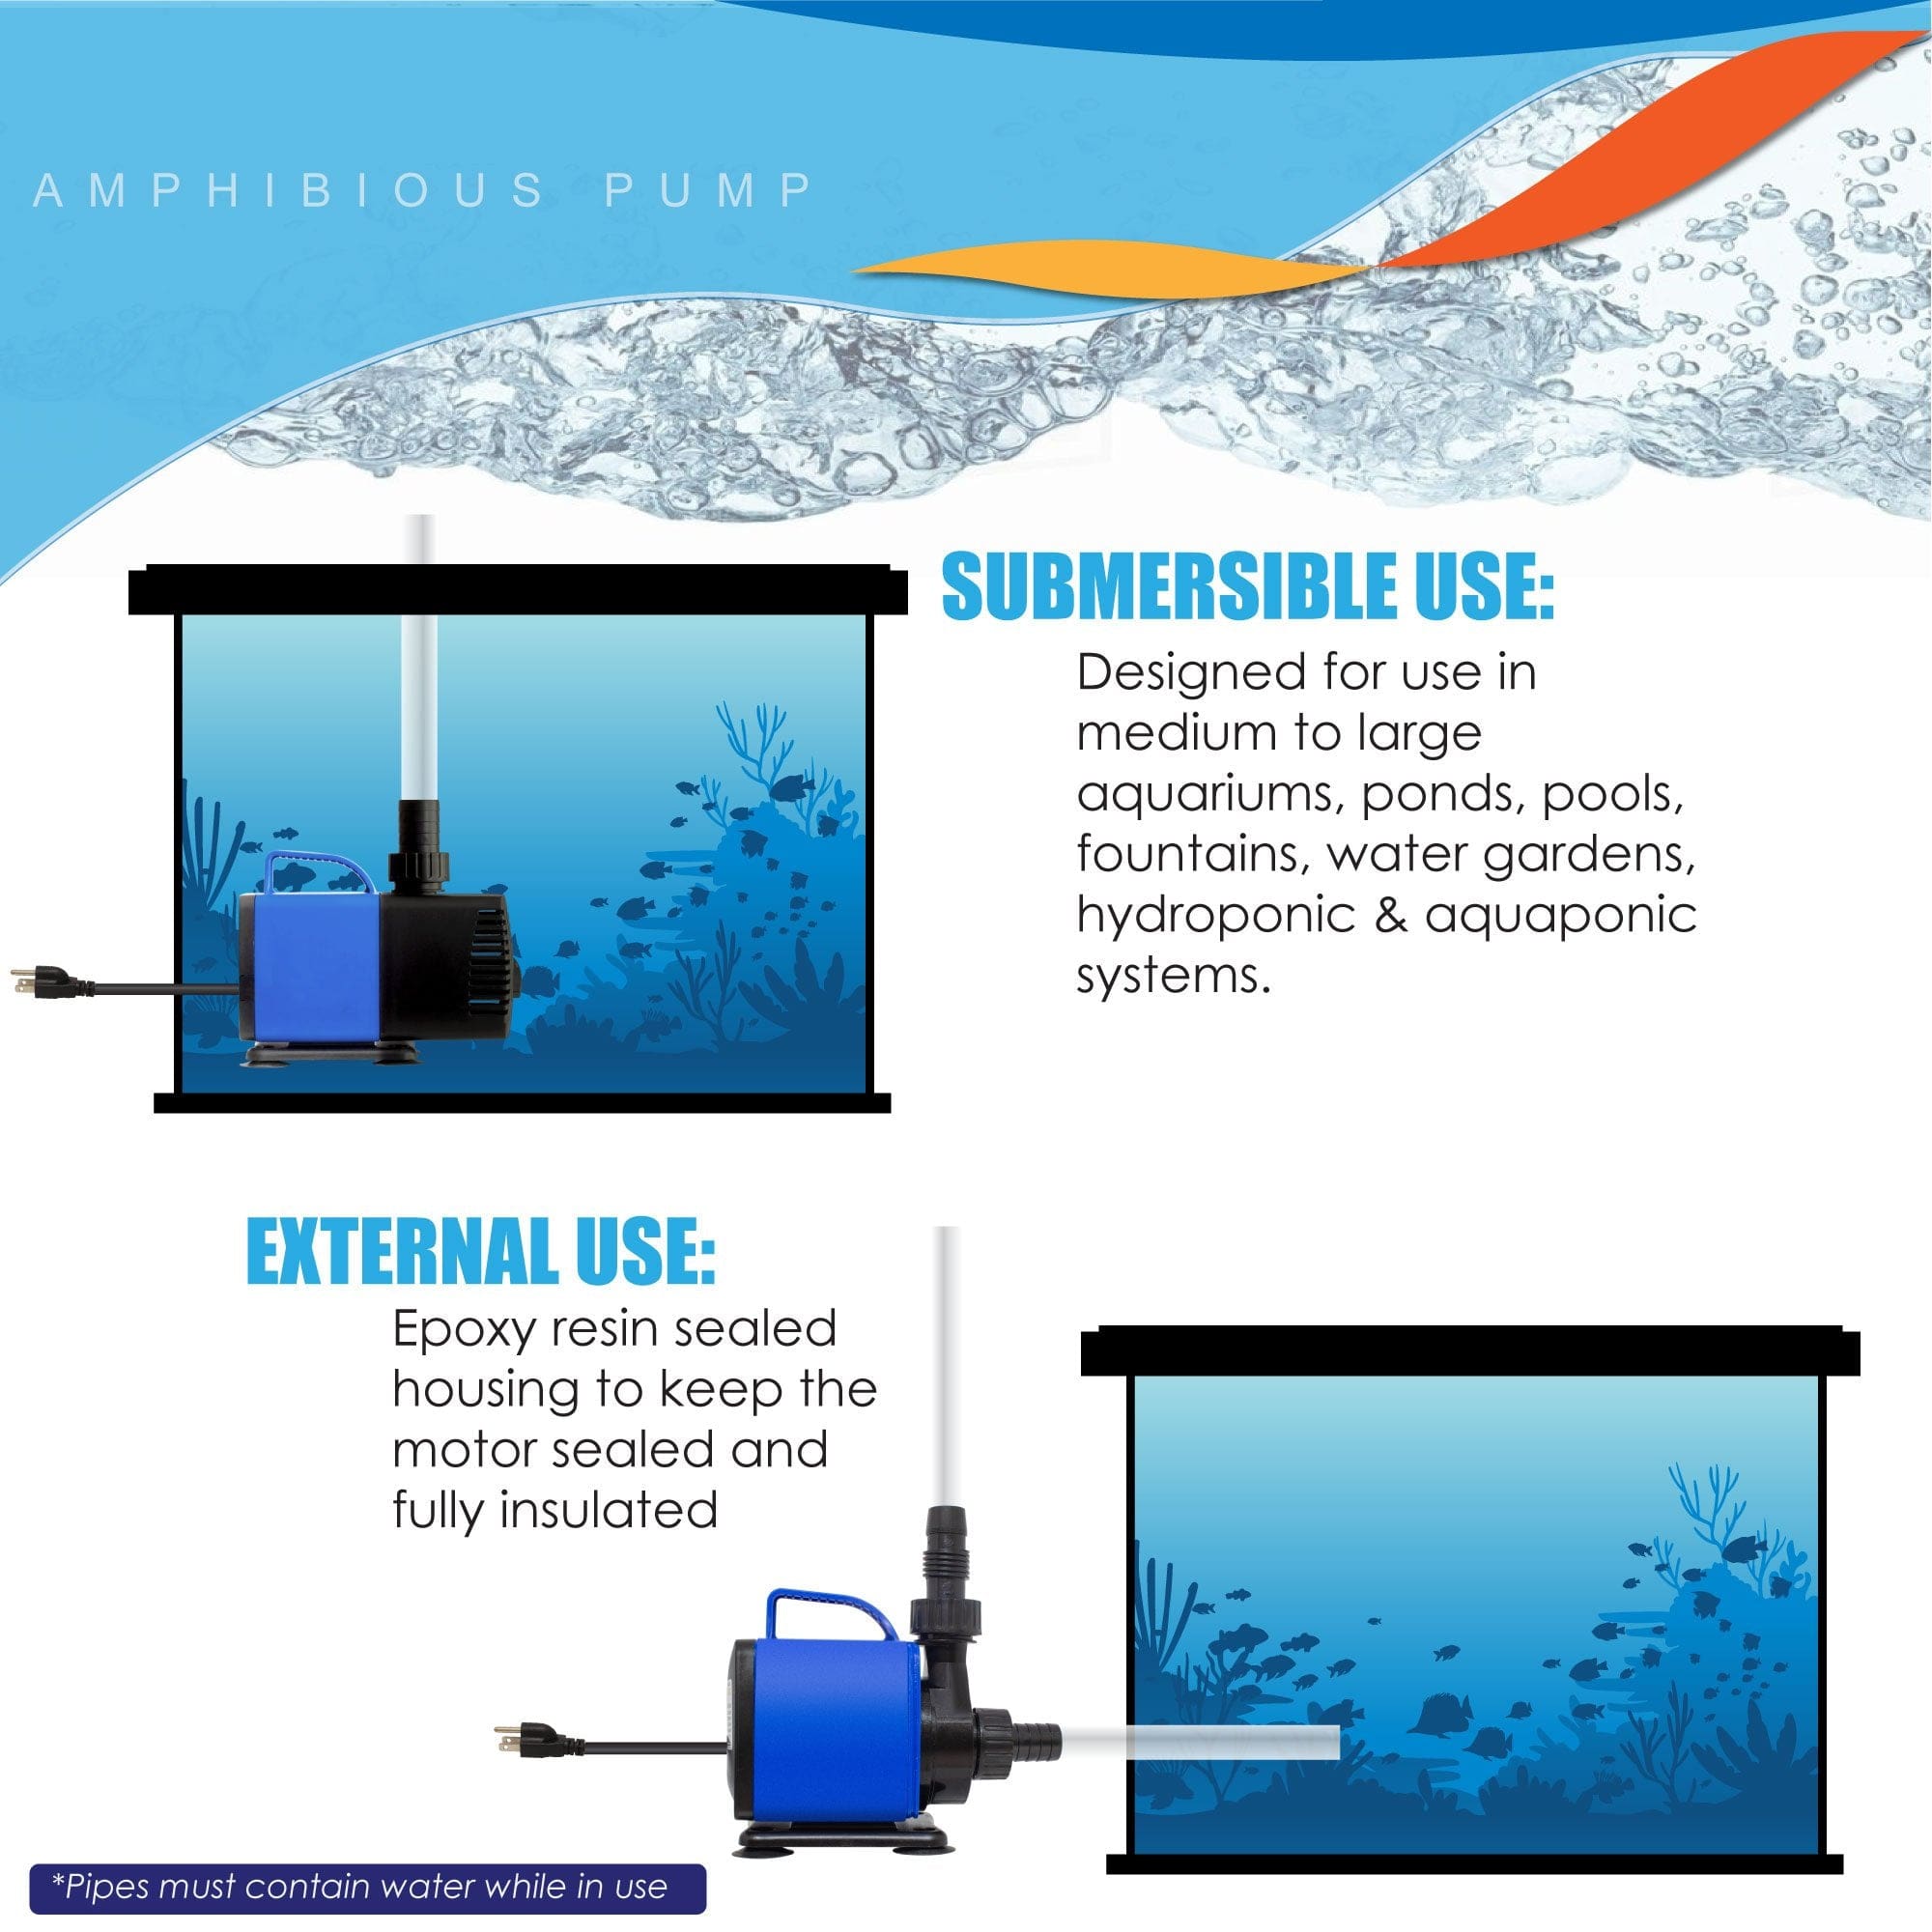 AquaDream Aqua Dream 2250 GPH Adjustable Submersible Pump Aquarium Water Treatments